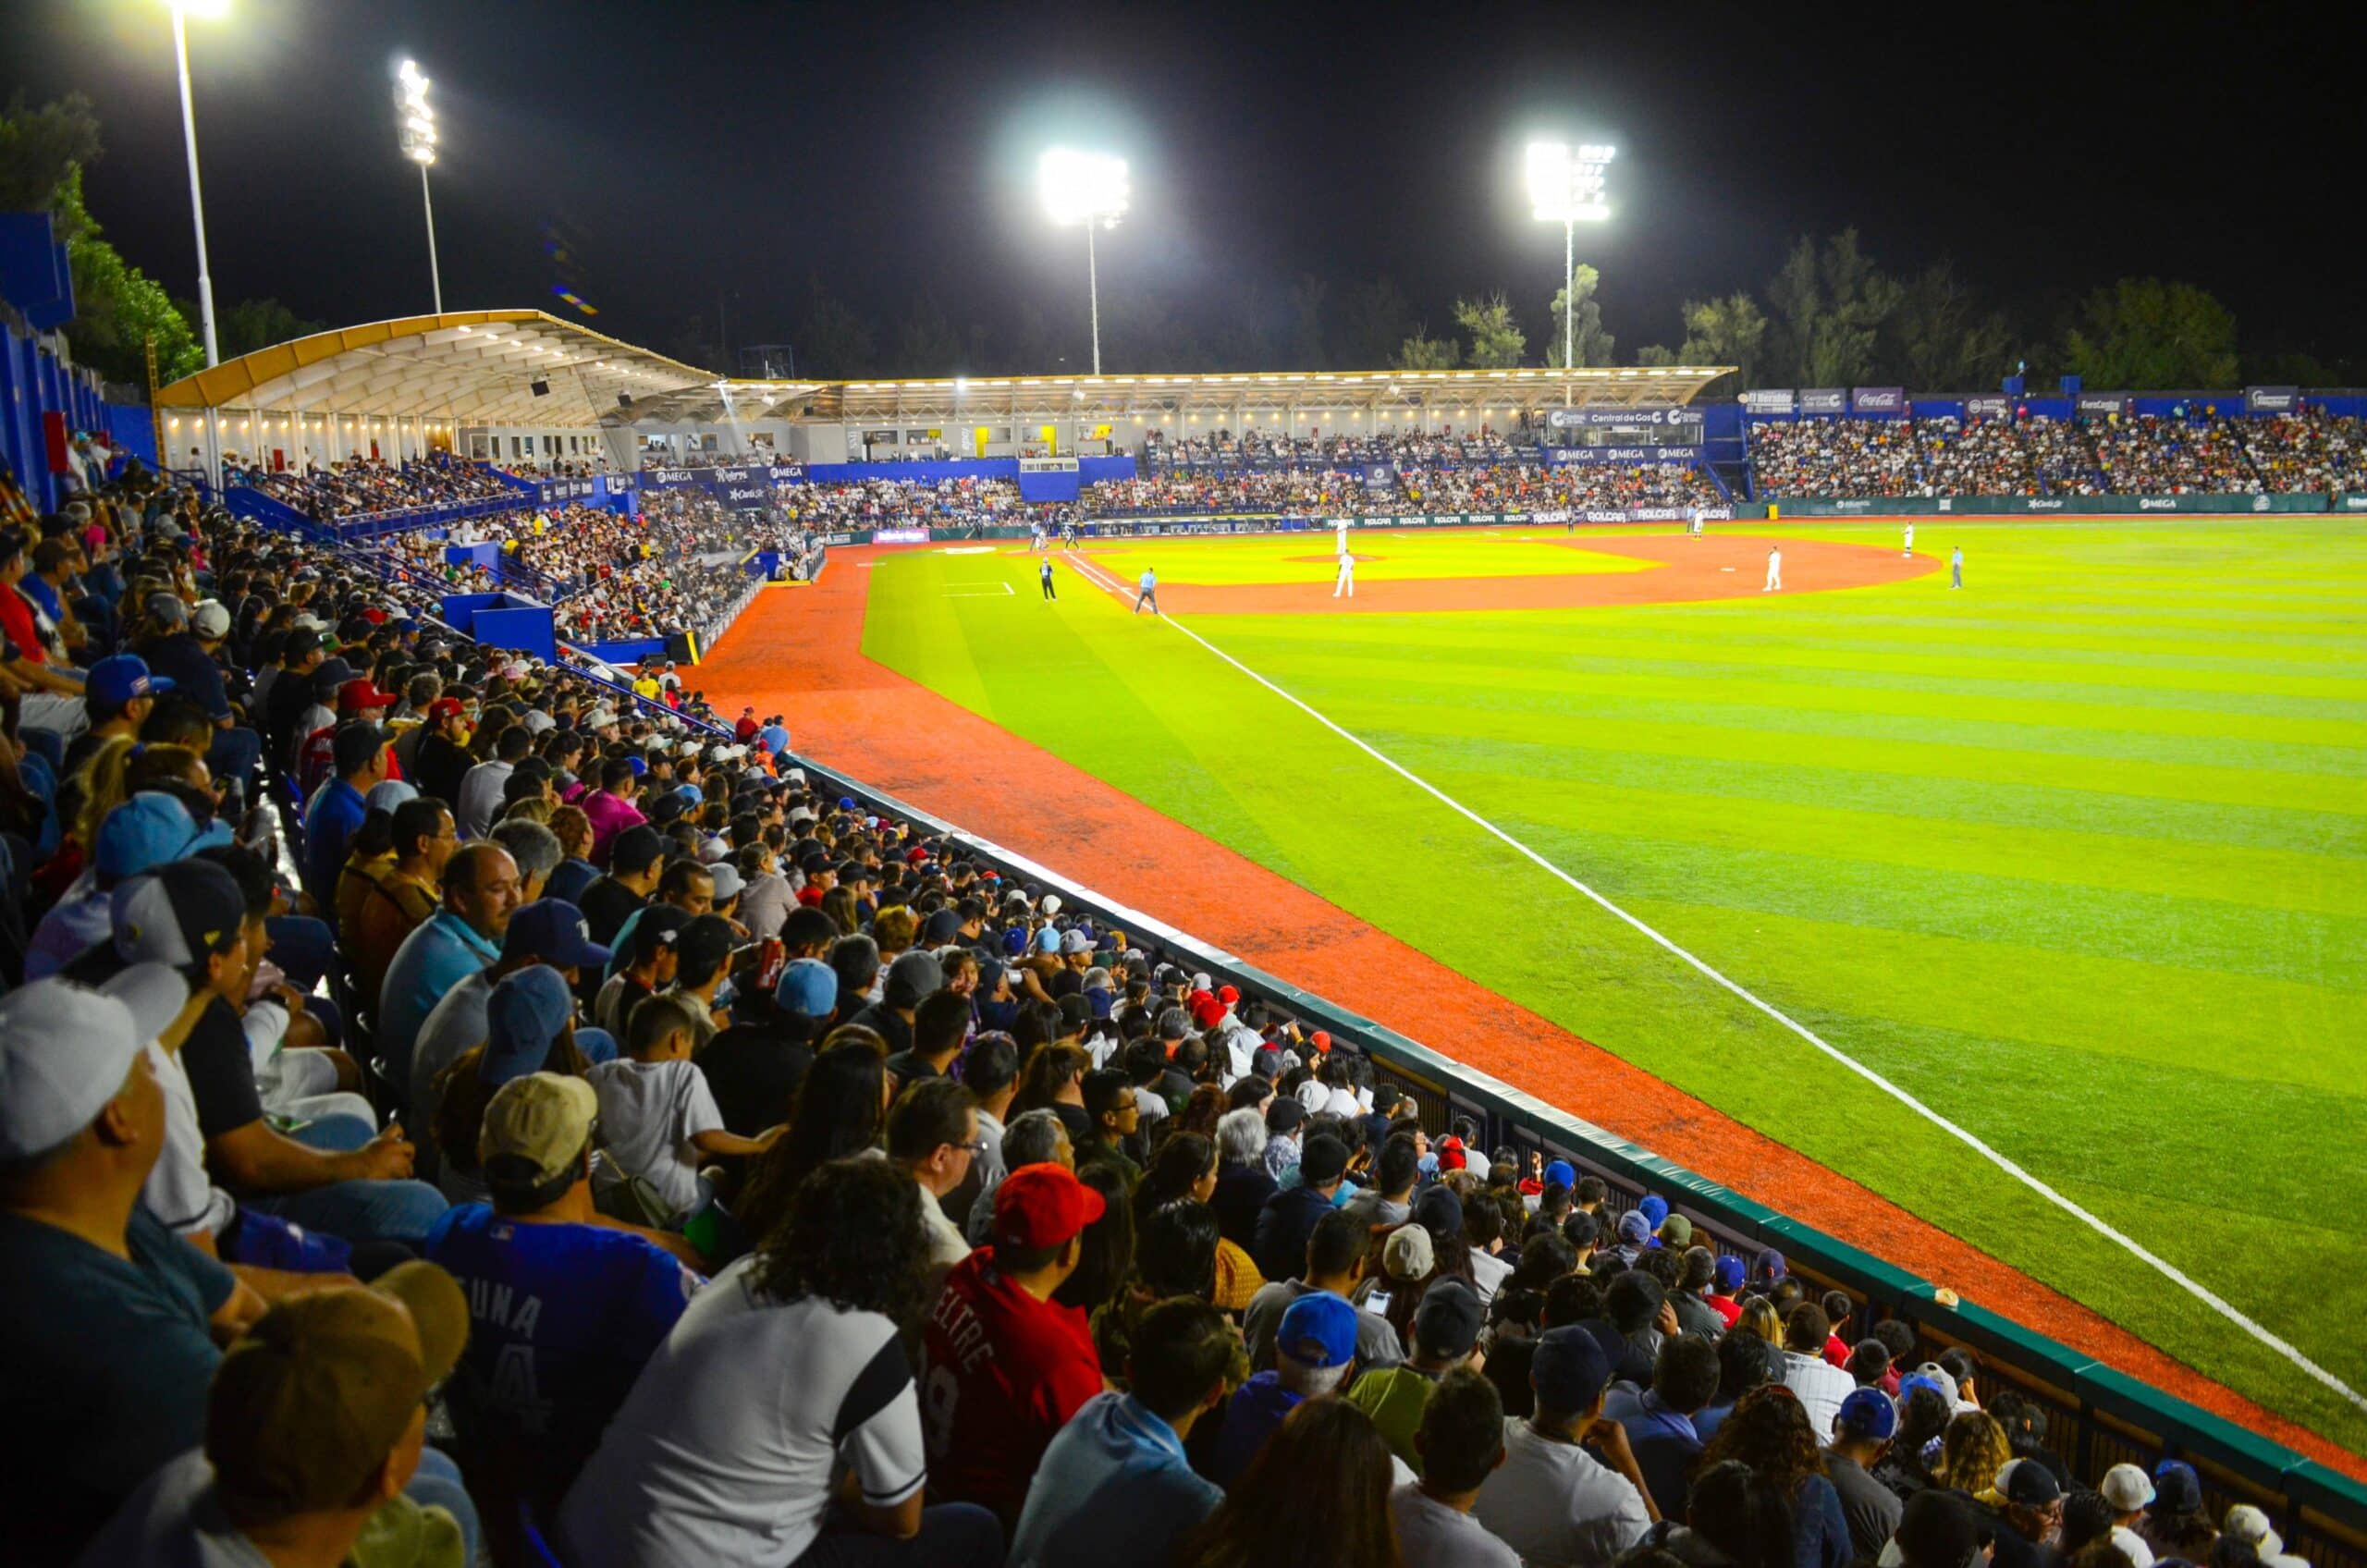 Estadio Alberto Romo Chávez.